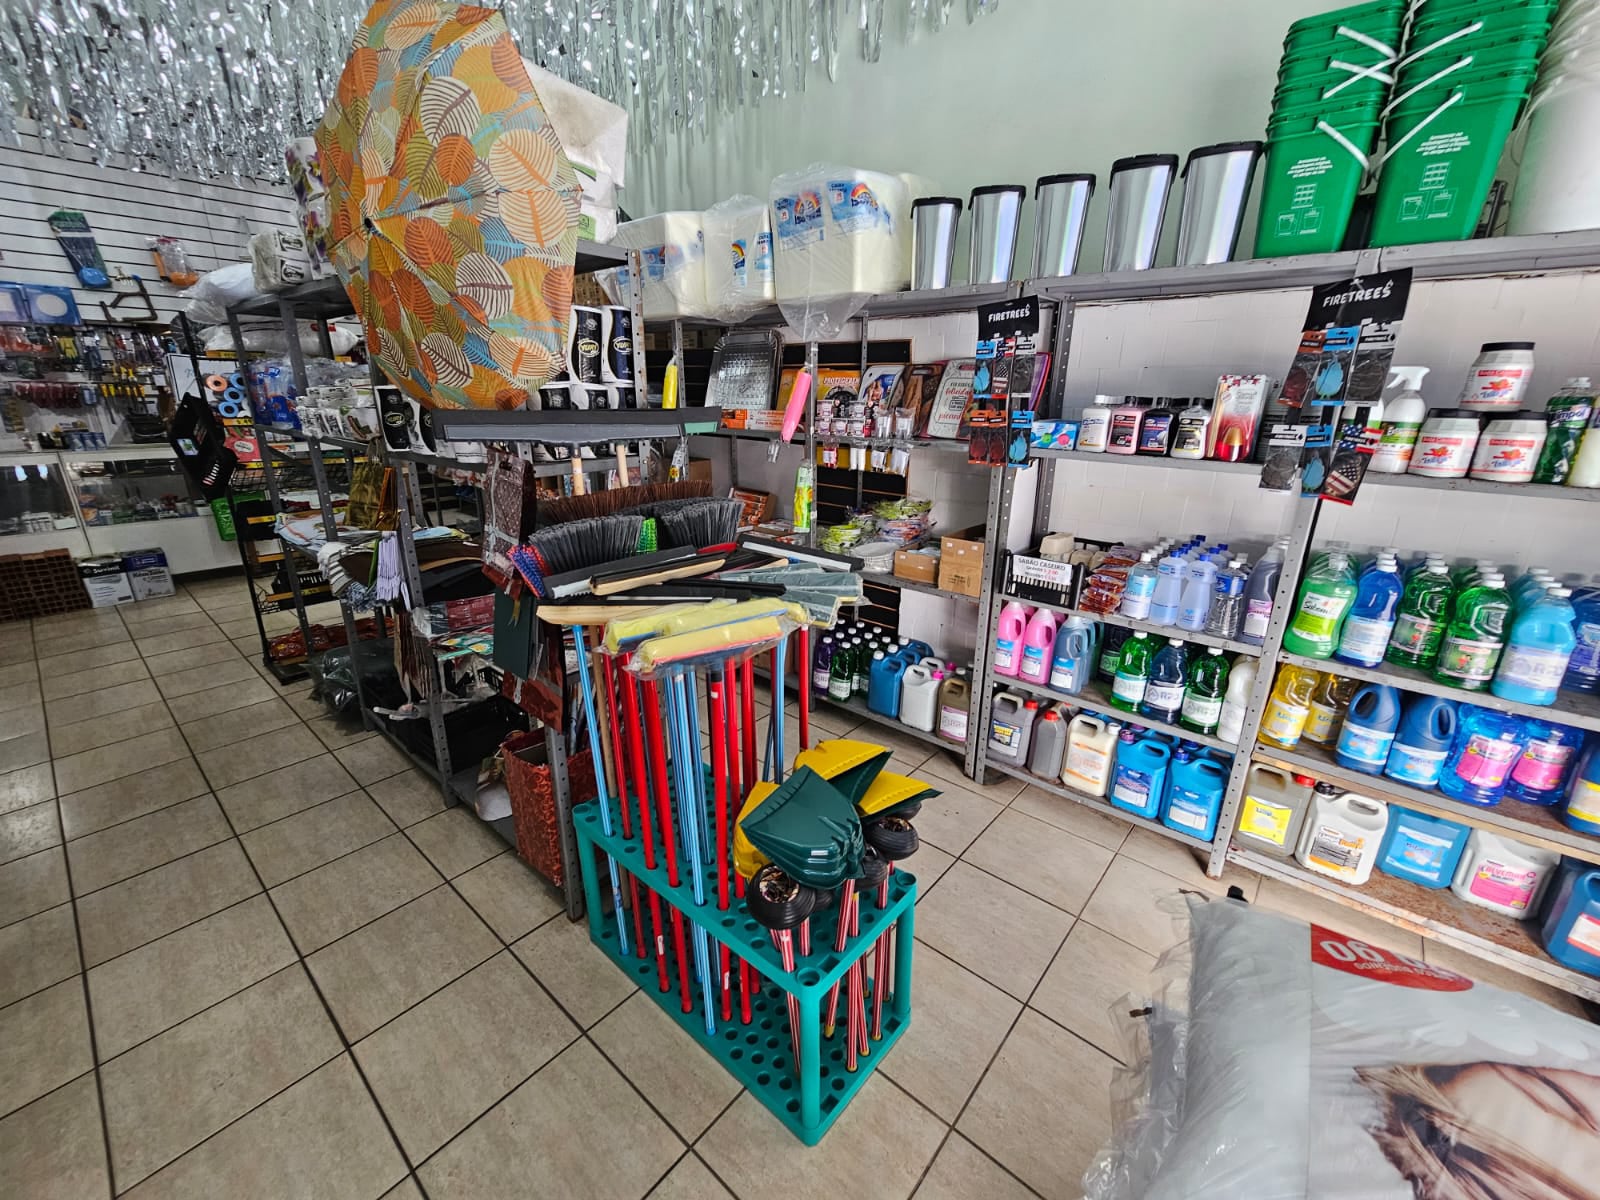 fotos de serviços da empresa de materiais de contrução, embalagens e descartáveis na região de São Paulo